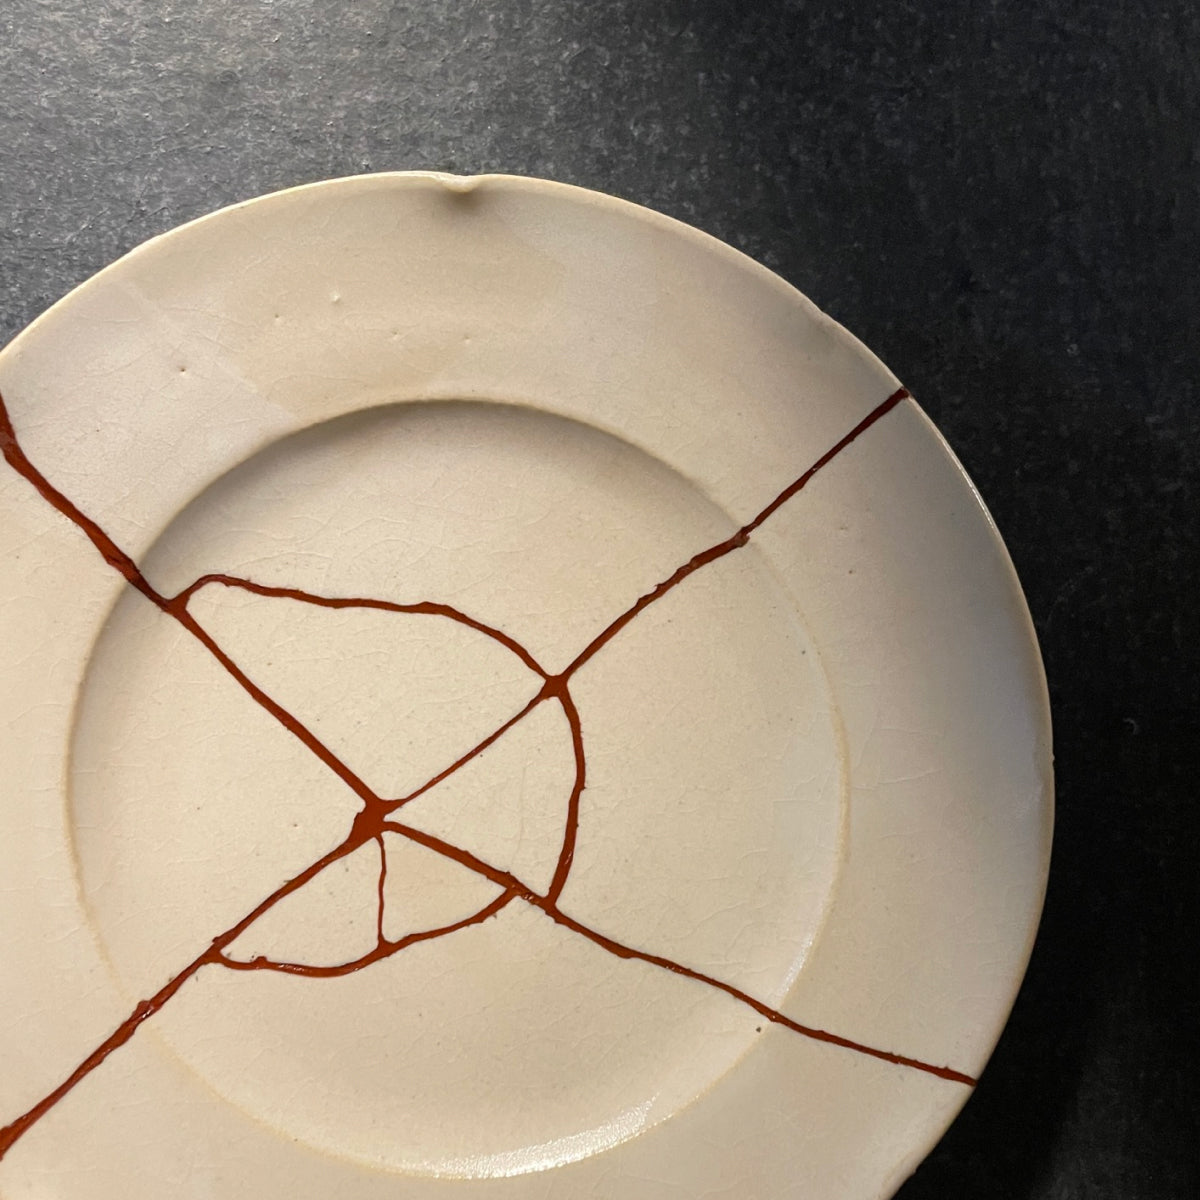 Kintsugi Repair Kit - The Ceramic School